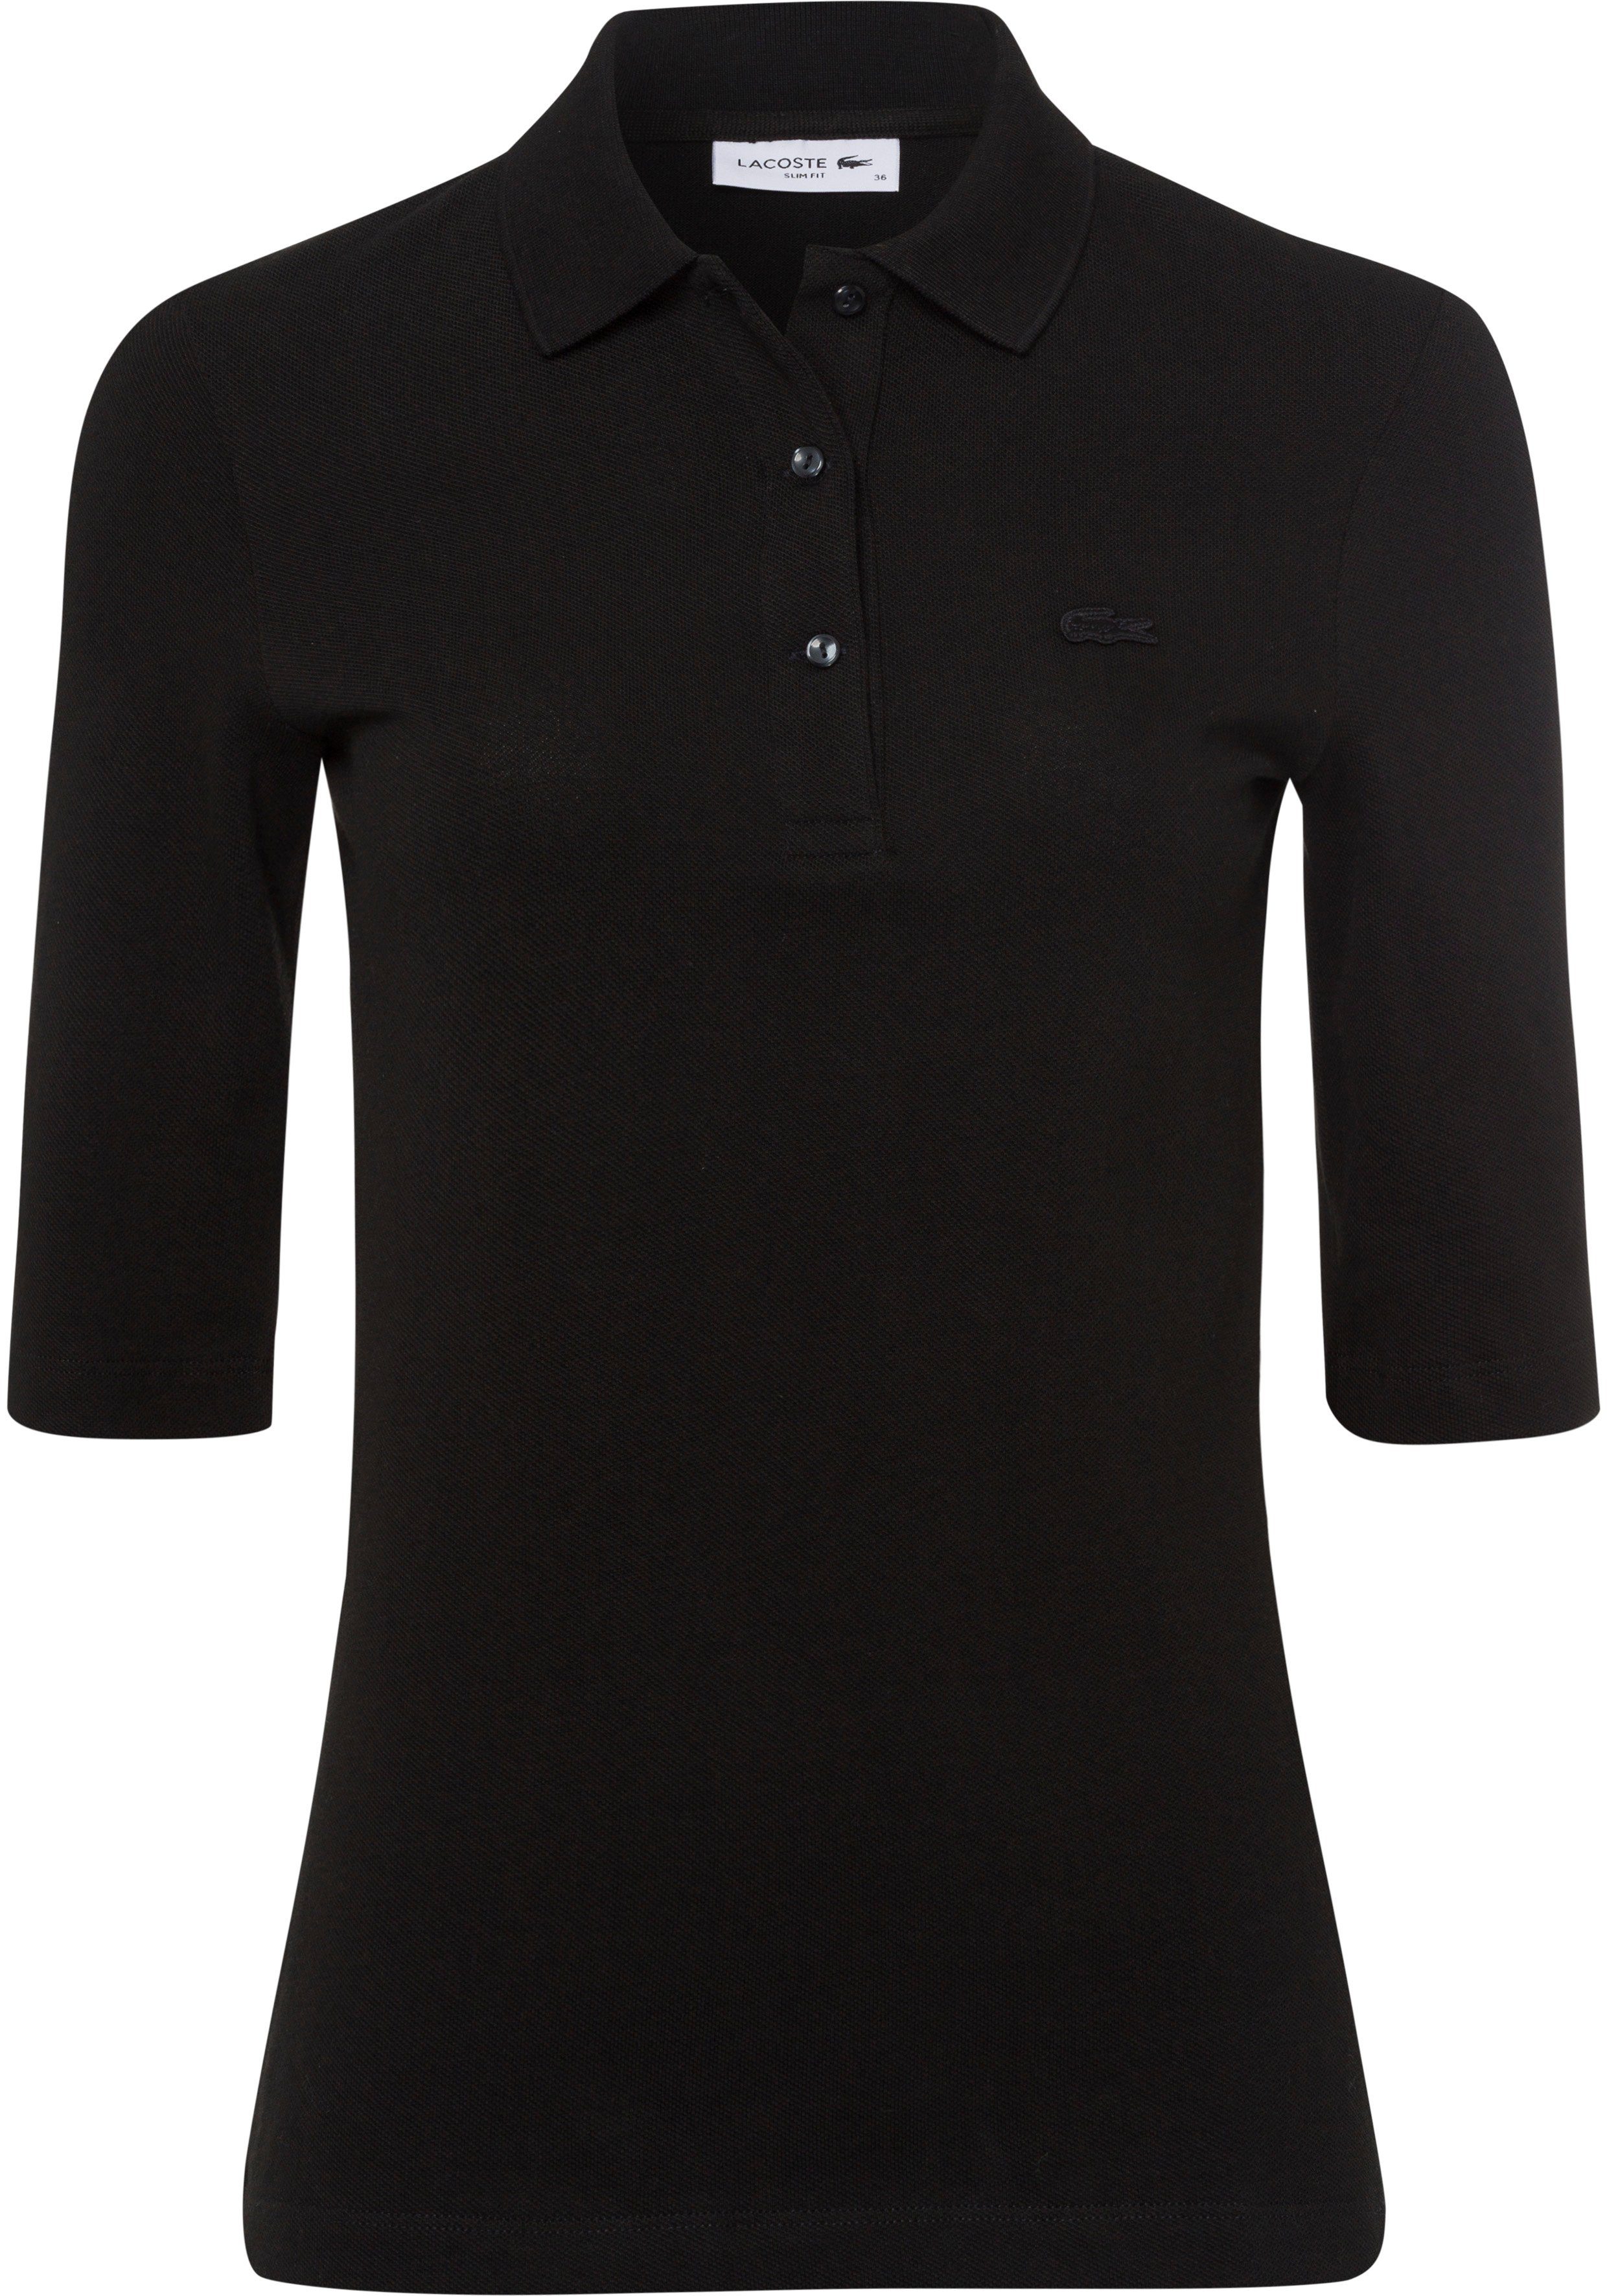 Lacoste Poloshirt mit tonigem Brust der Logo auf schwarz